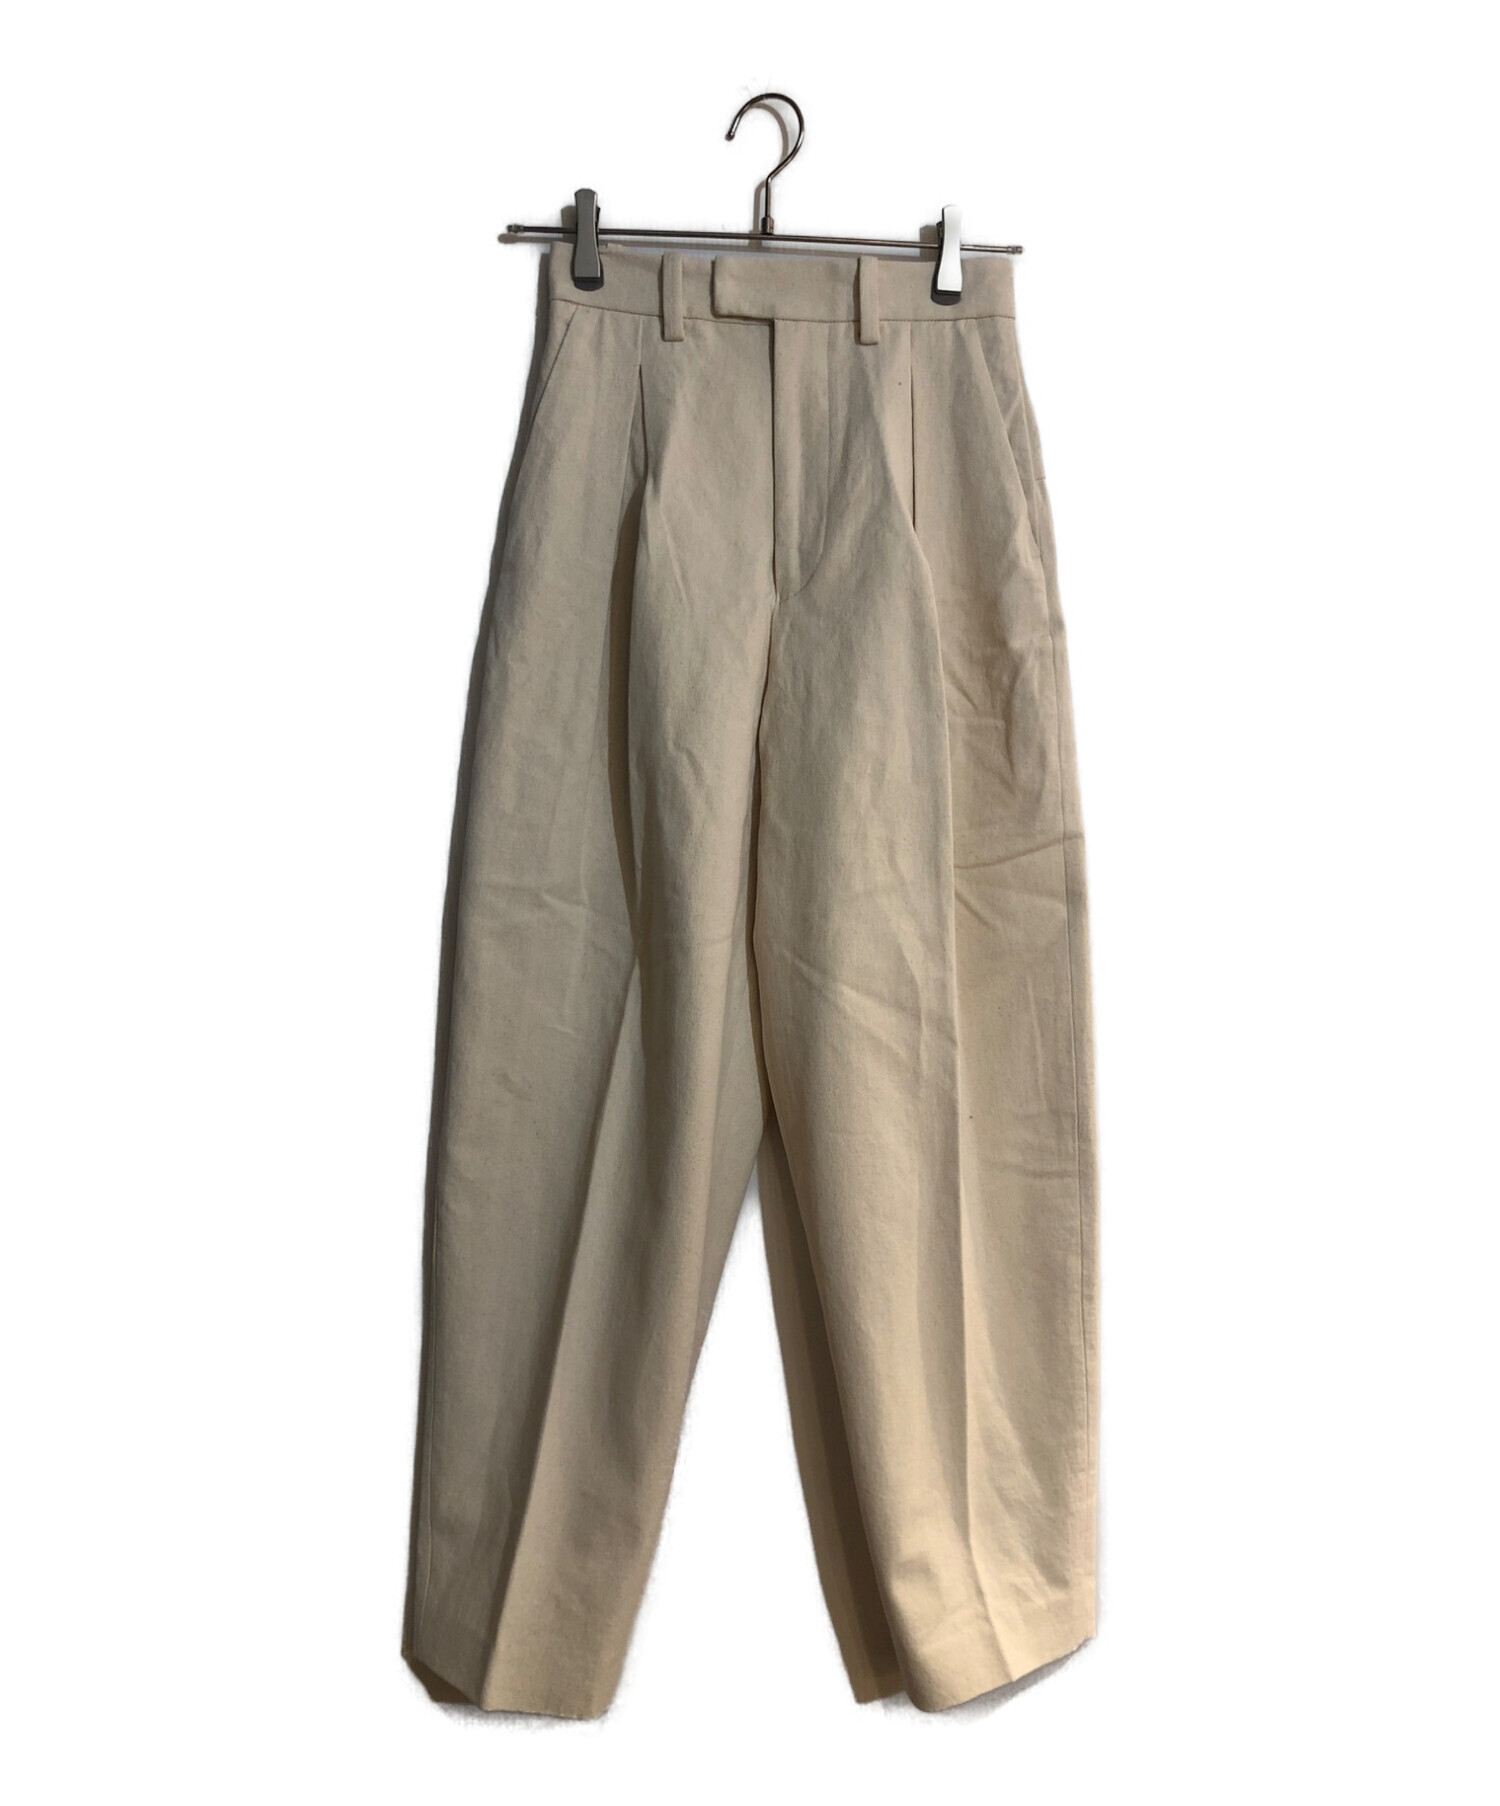 TODAYFUL (トゥデイフル) Cotton Boxtuck Pants/コットンボックスタックパンツ ベージュ サイズ:36